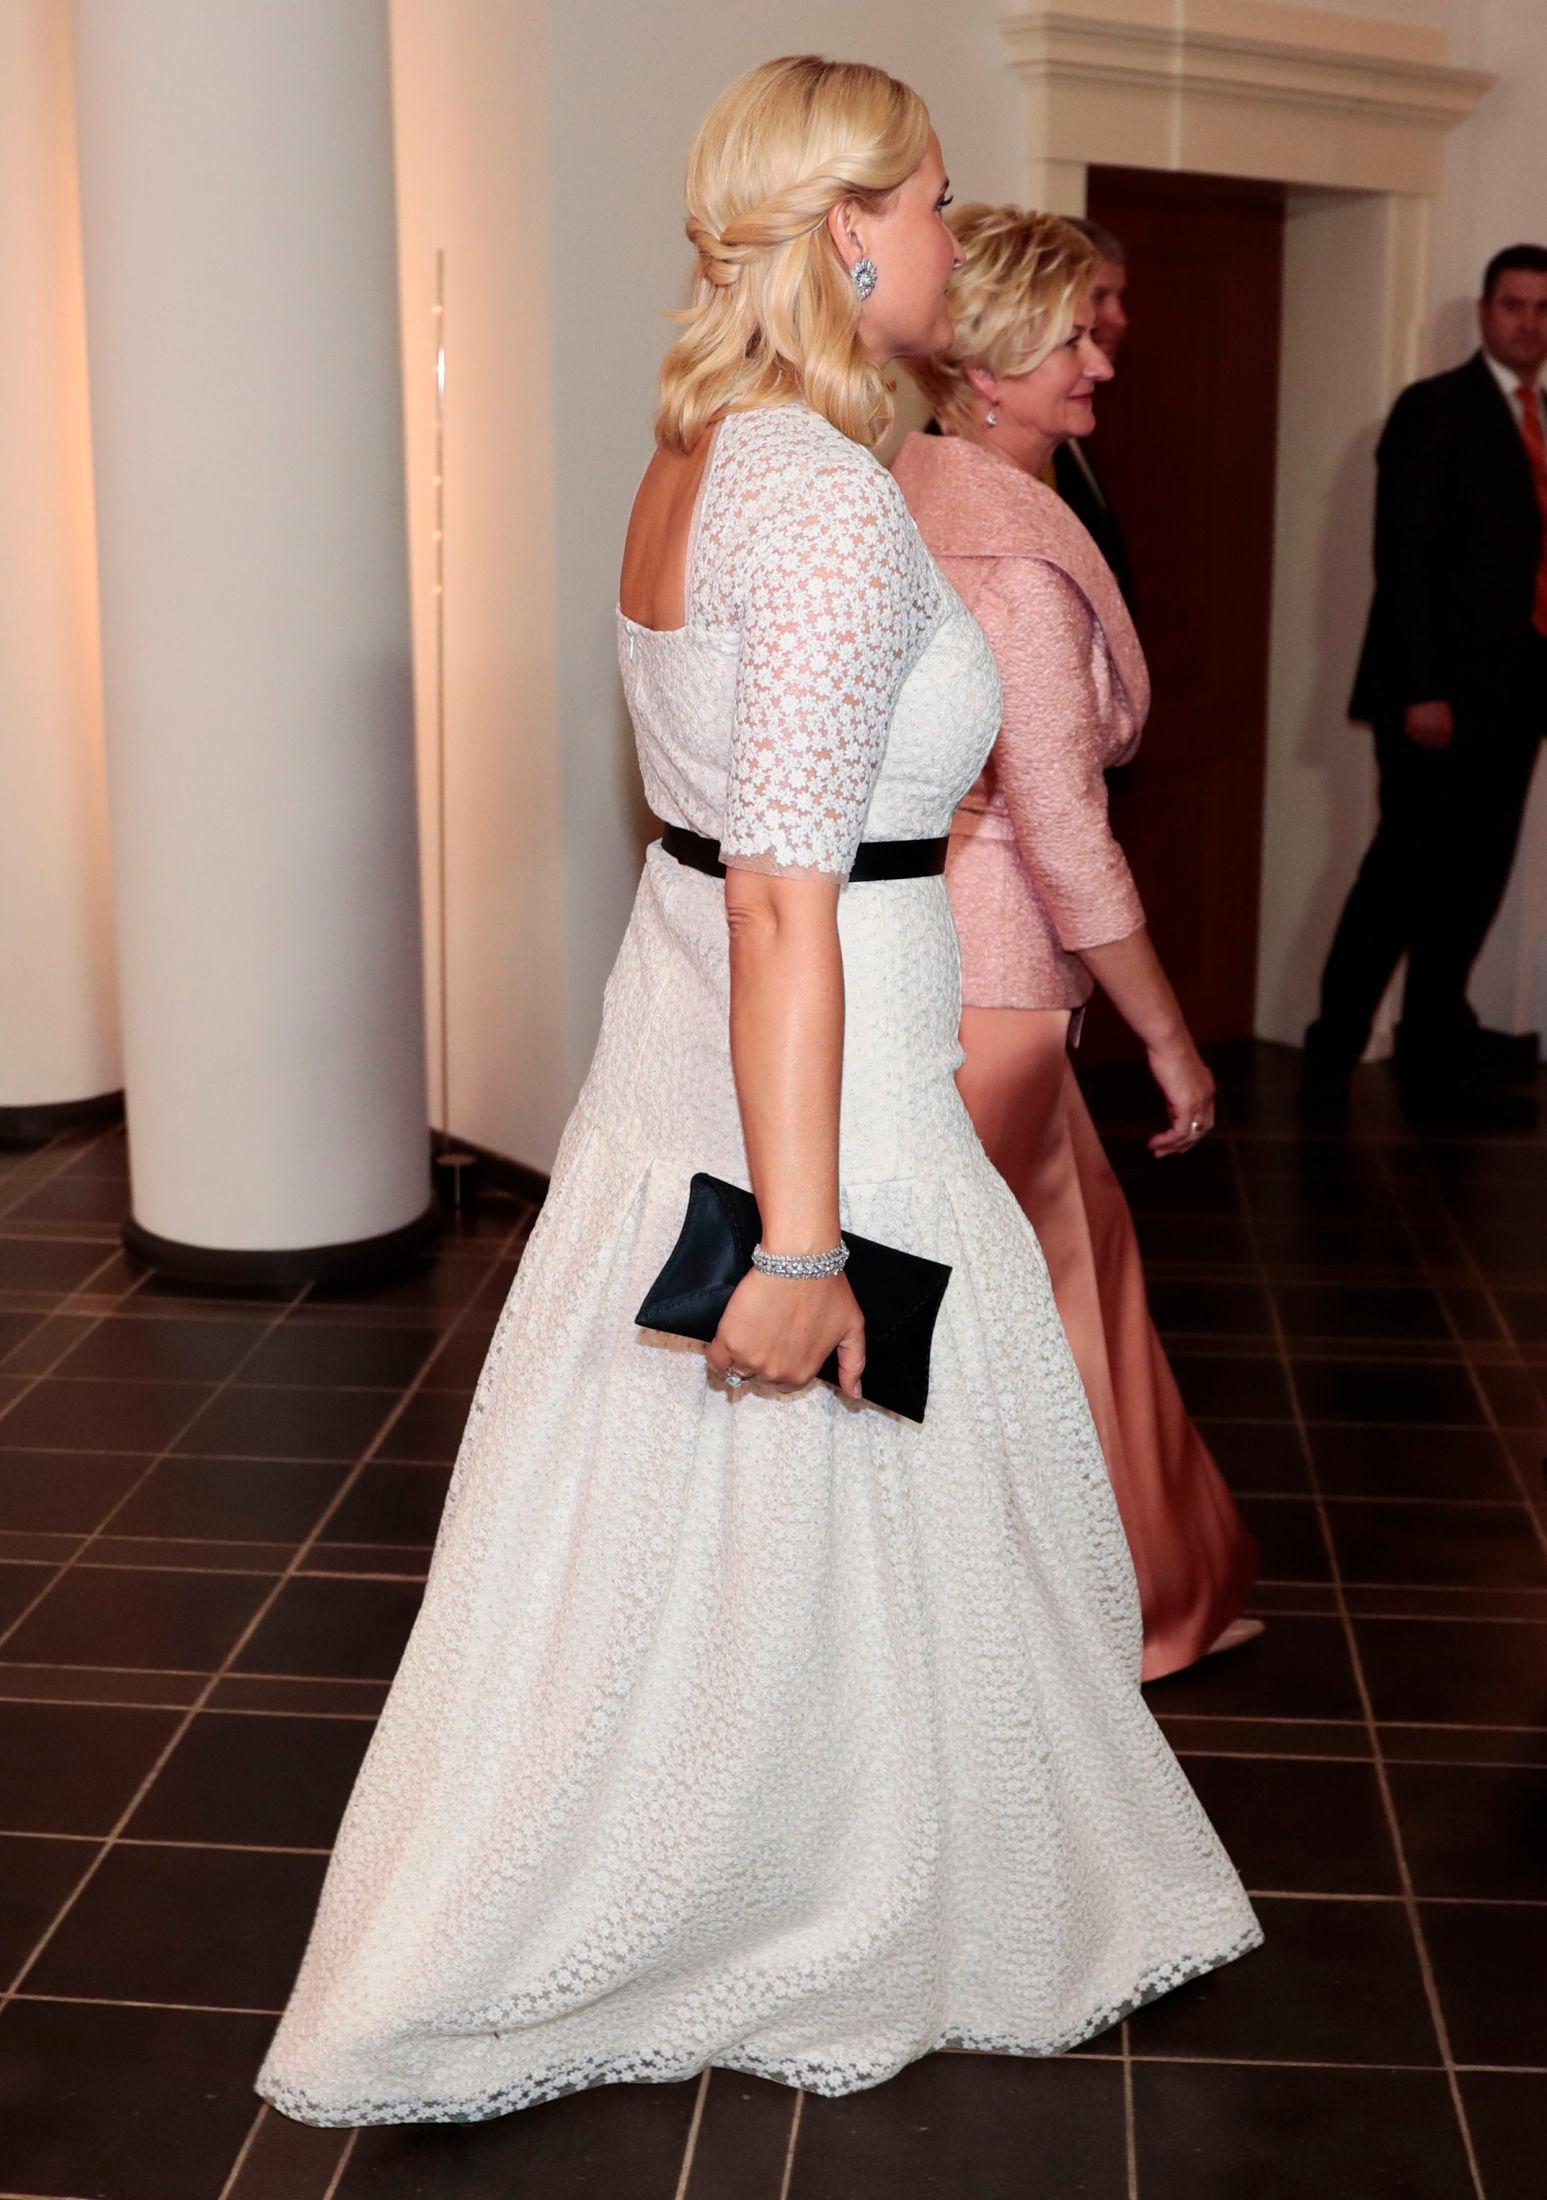 SORT OG HVITT: Kronprinsesse Mette-Marit i fotsid hvit kjole, stylet med svarte detaljer i Riga. Foto: Lise Åserud/NTB scanpix.